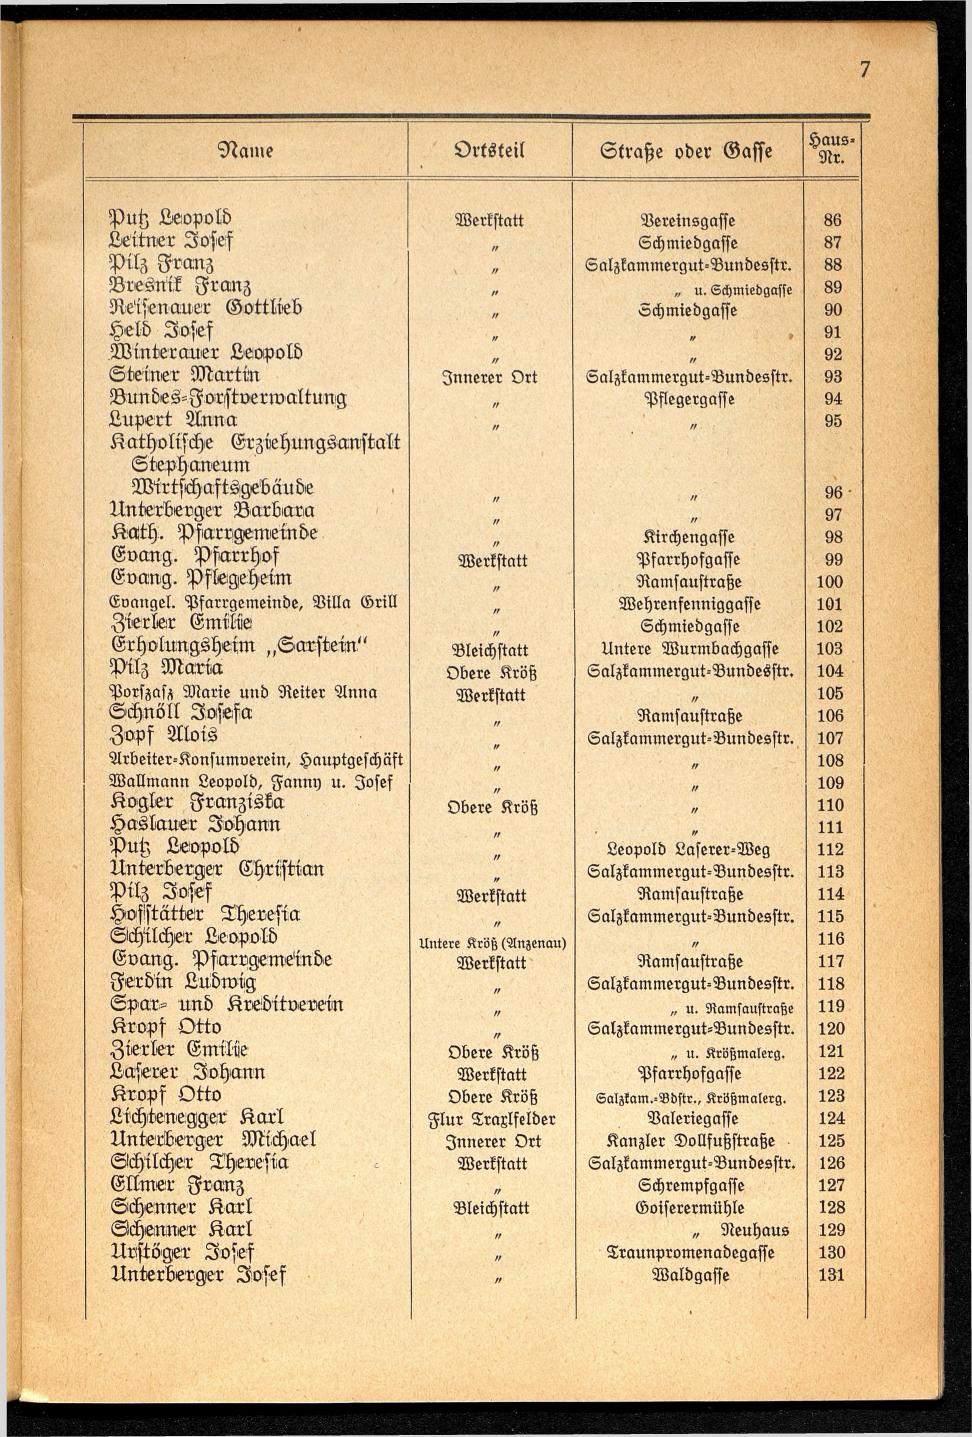 Häuser-Verzeichnis der Gemeinde Goisern nach dem Stande von November 1937 - Seite 9